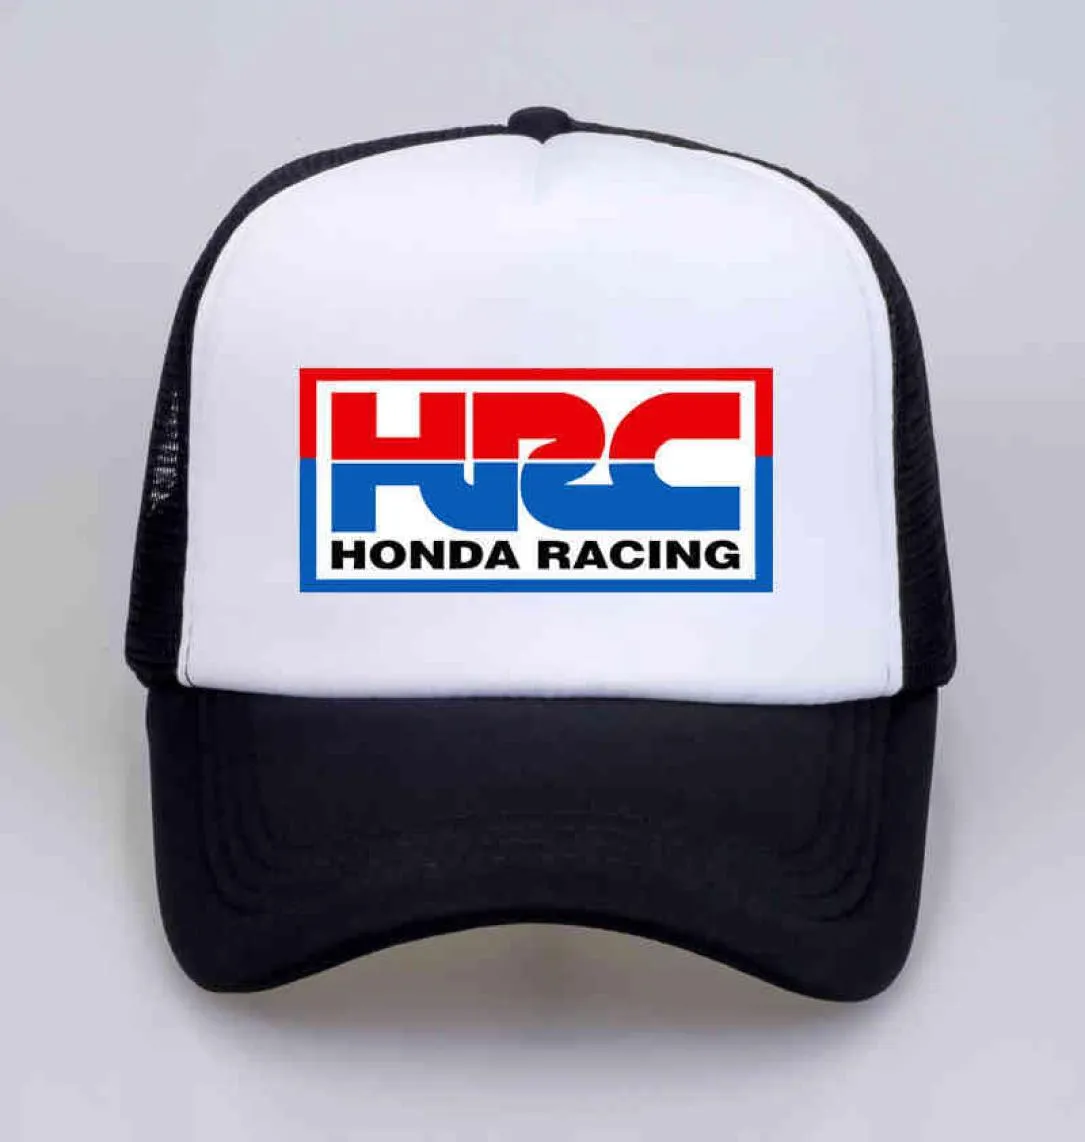 トラッカーS HRCホンダレーシングカーオートバイファンクールサマーベースボールメッシュネットヒップホップキャップハットメン6327571